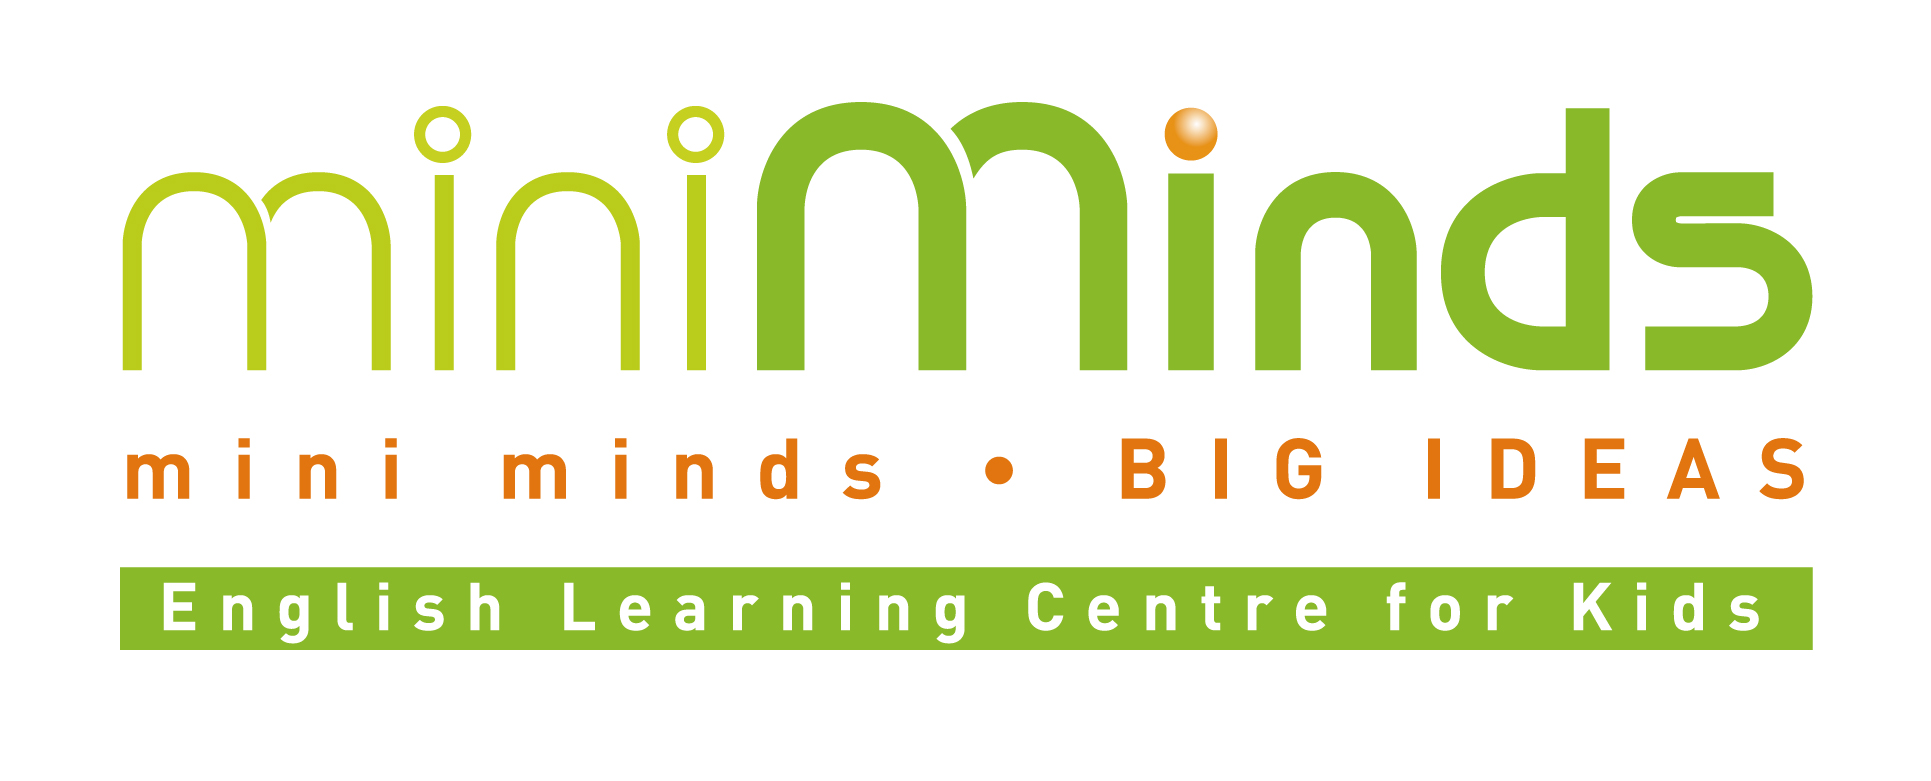 miniMinds English Learning Centre logo